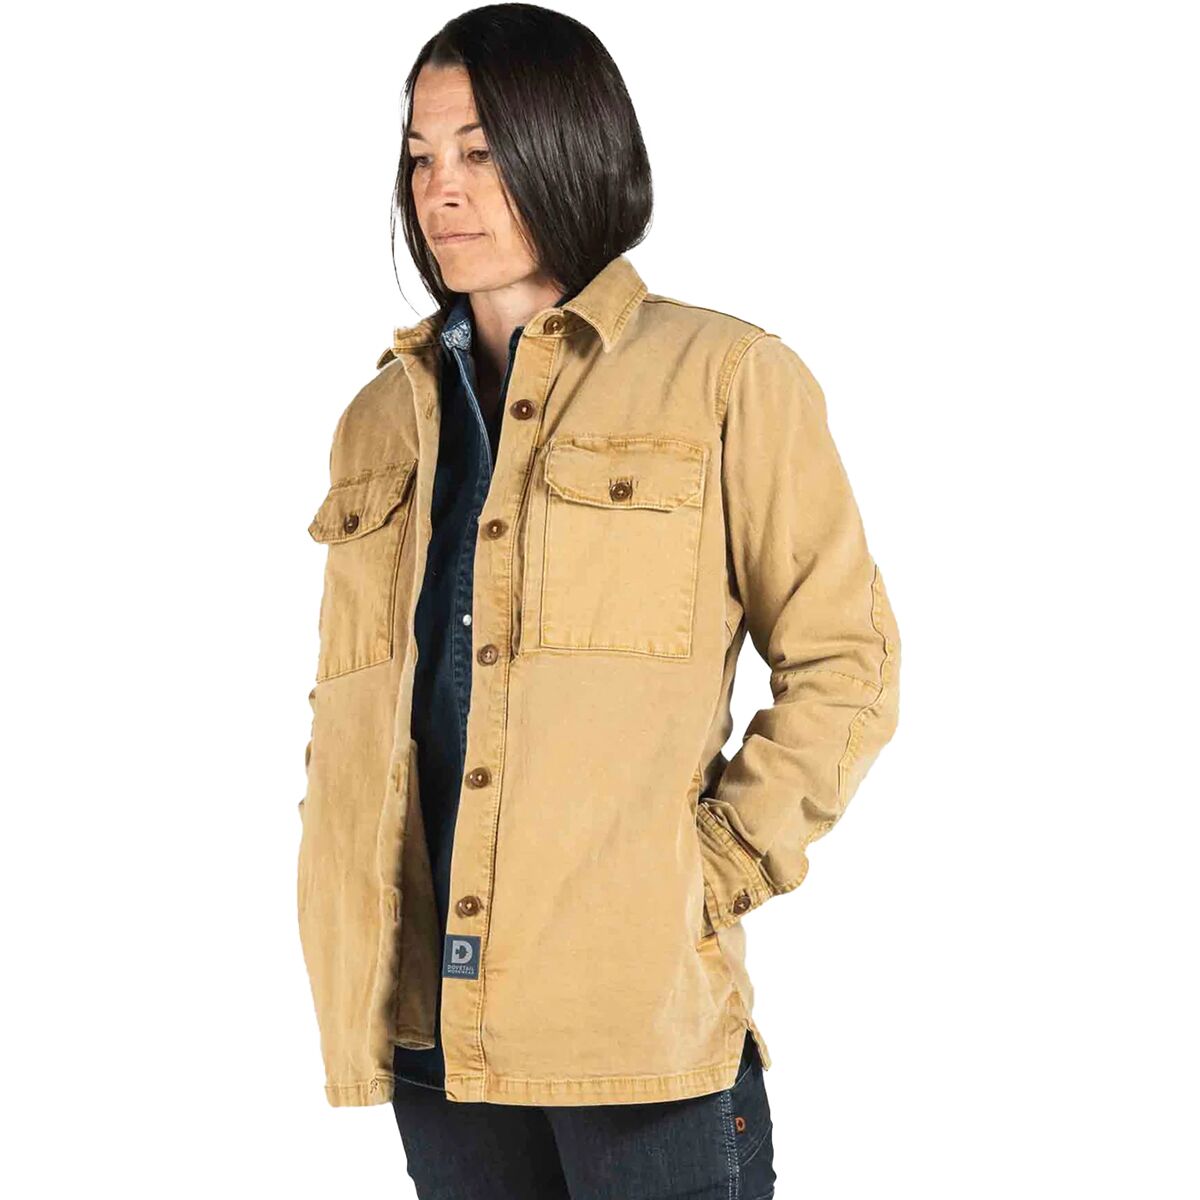 Dovetail Workwear Oahe Work Jacket - Women's